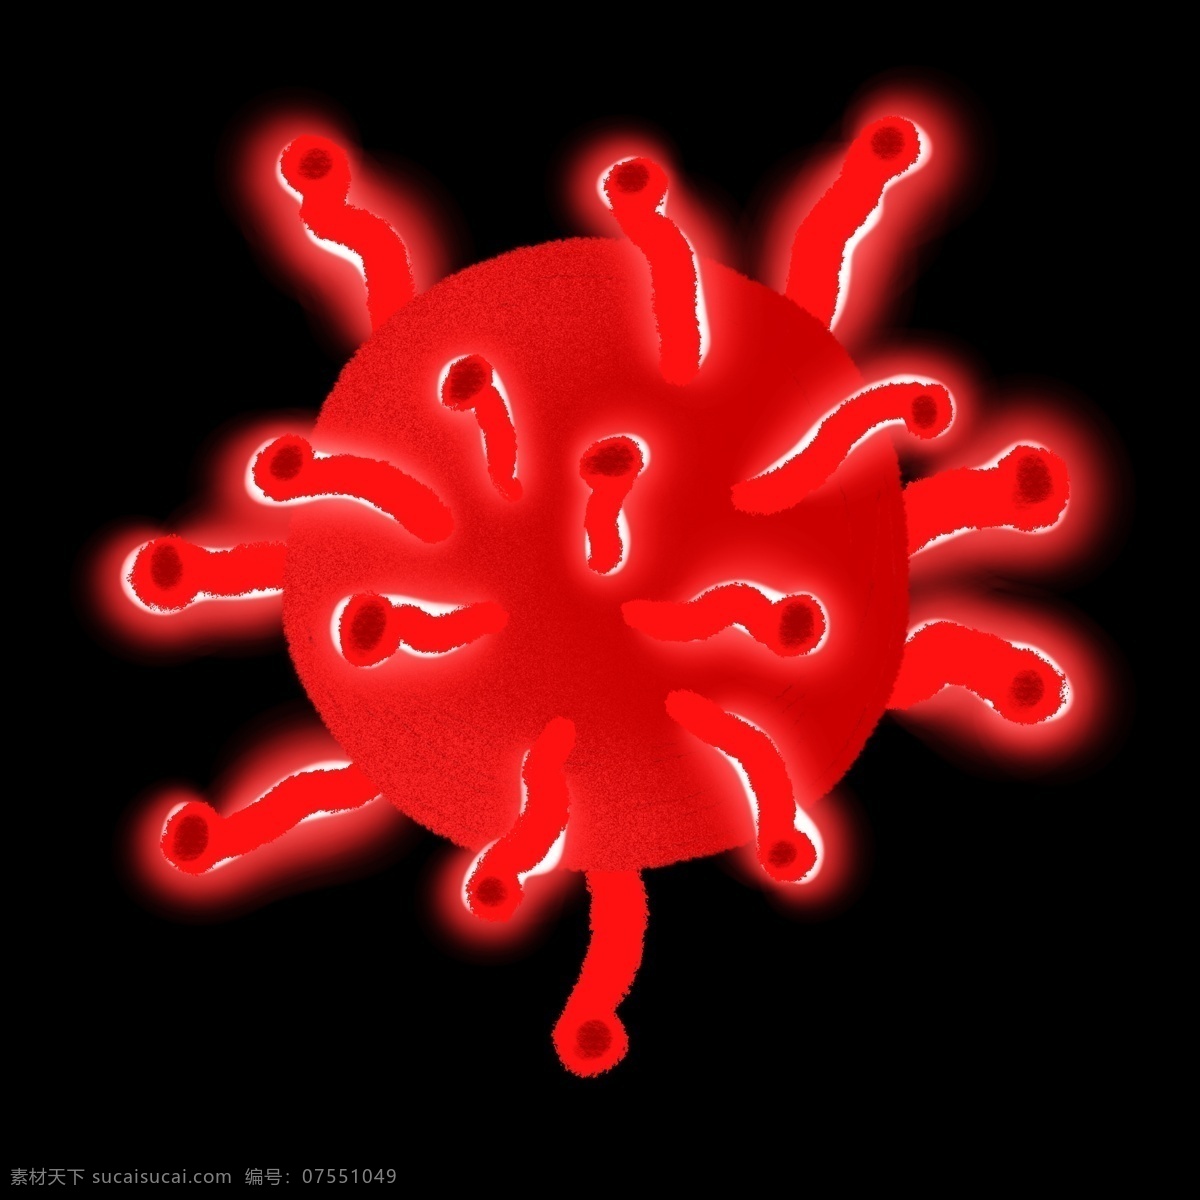 红色 斑点 细菌 插画 卡通细菌插画 红色球菌 黑的斑点 生物细菌插画 创意细菌插画 球菌插画